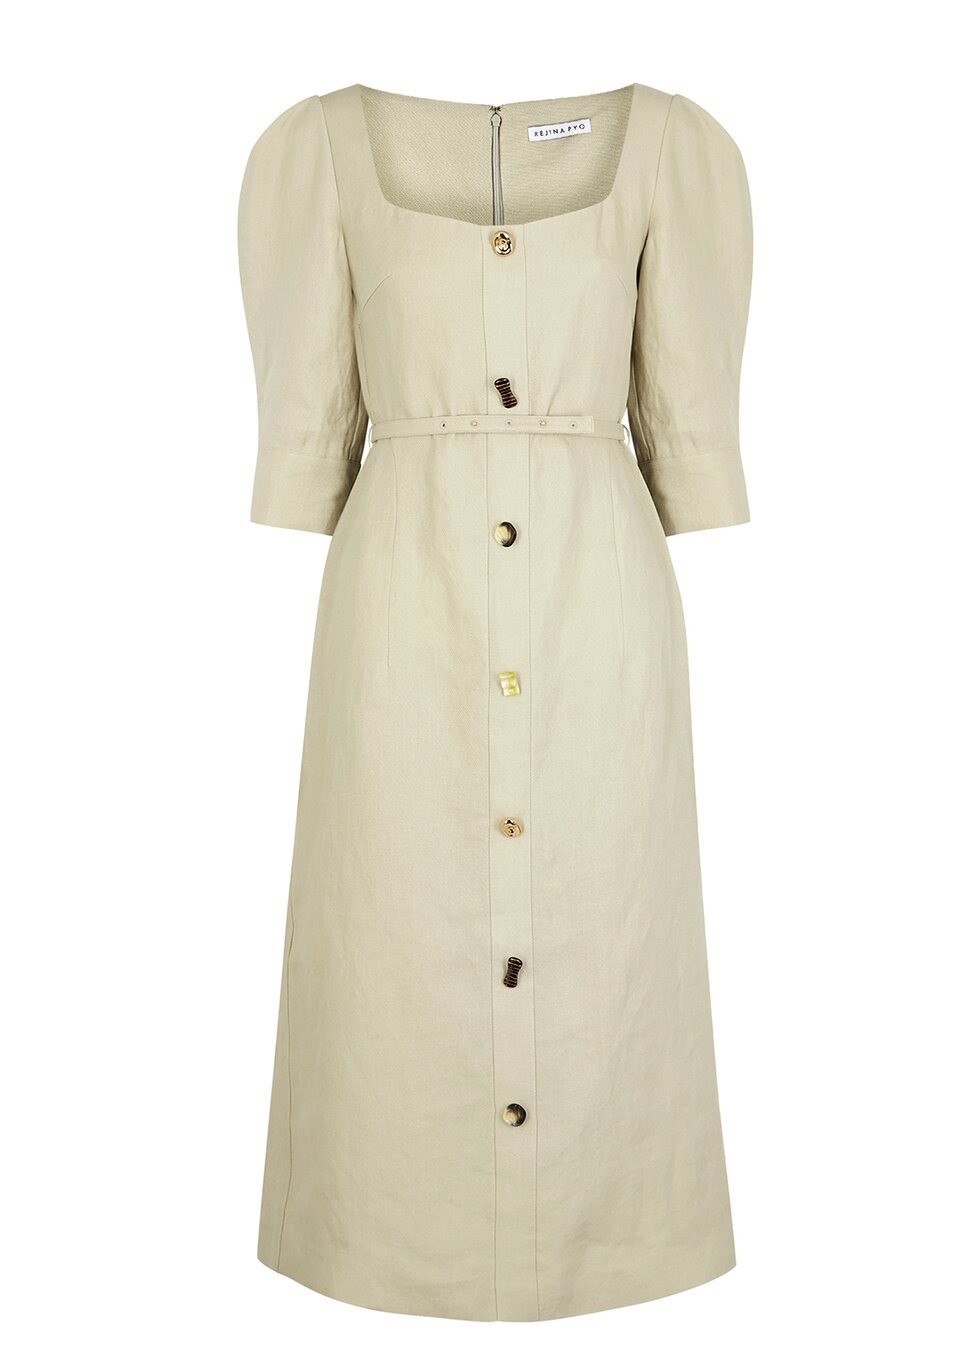 Dress, £675, Rejina Pyo